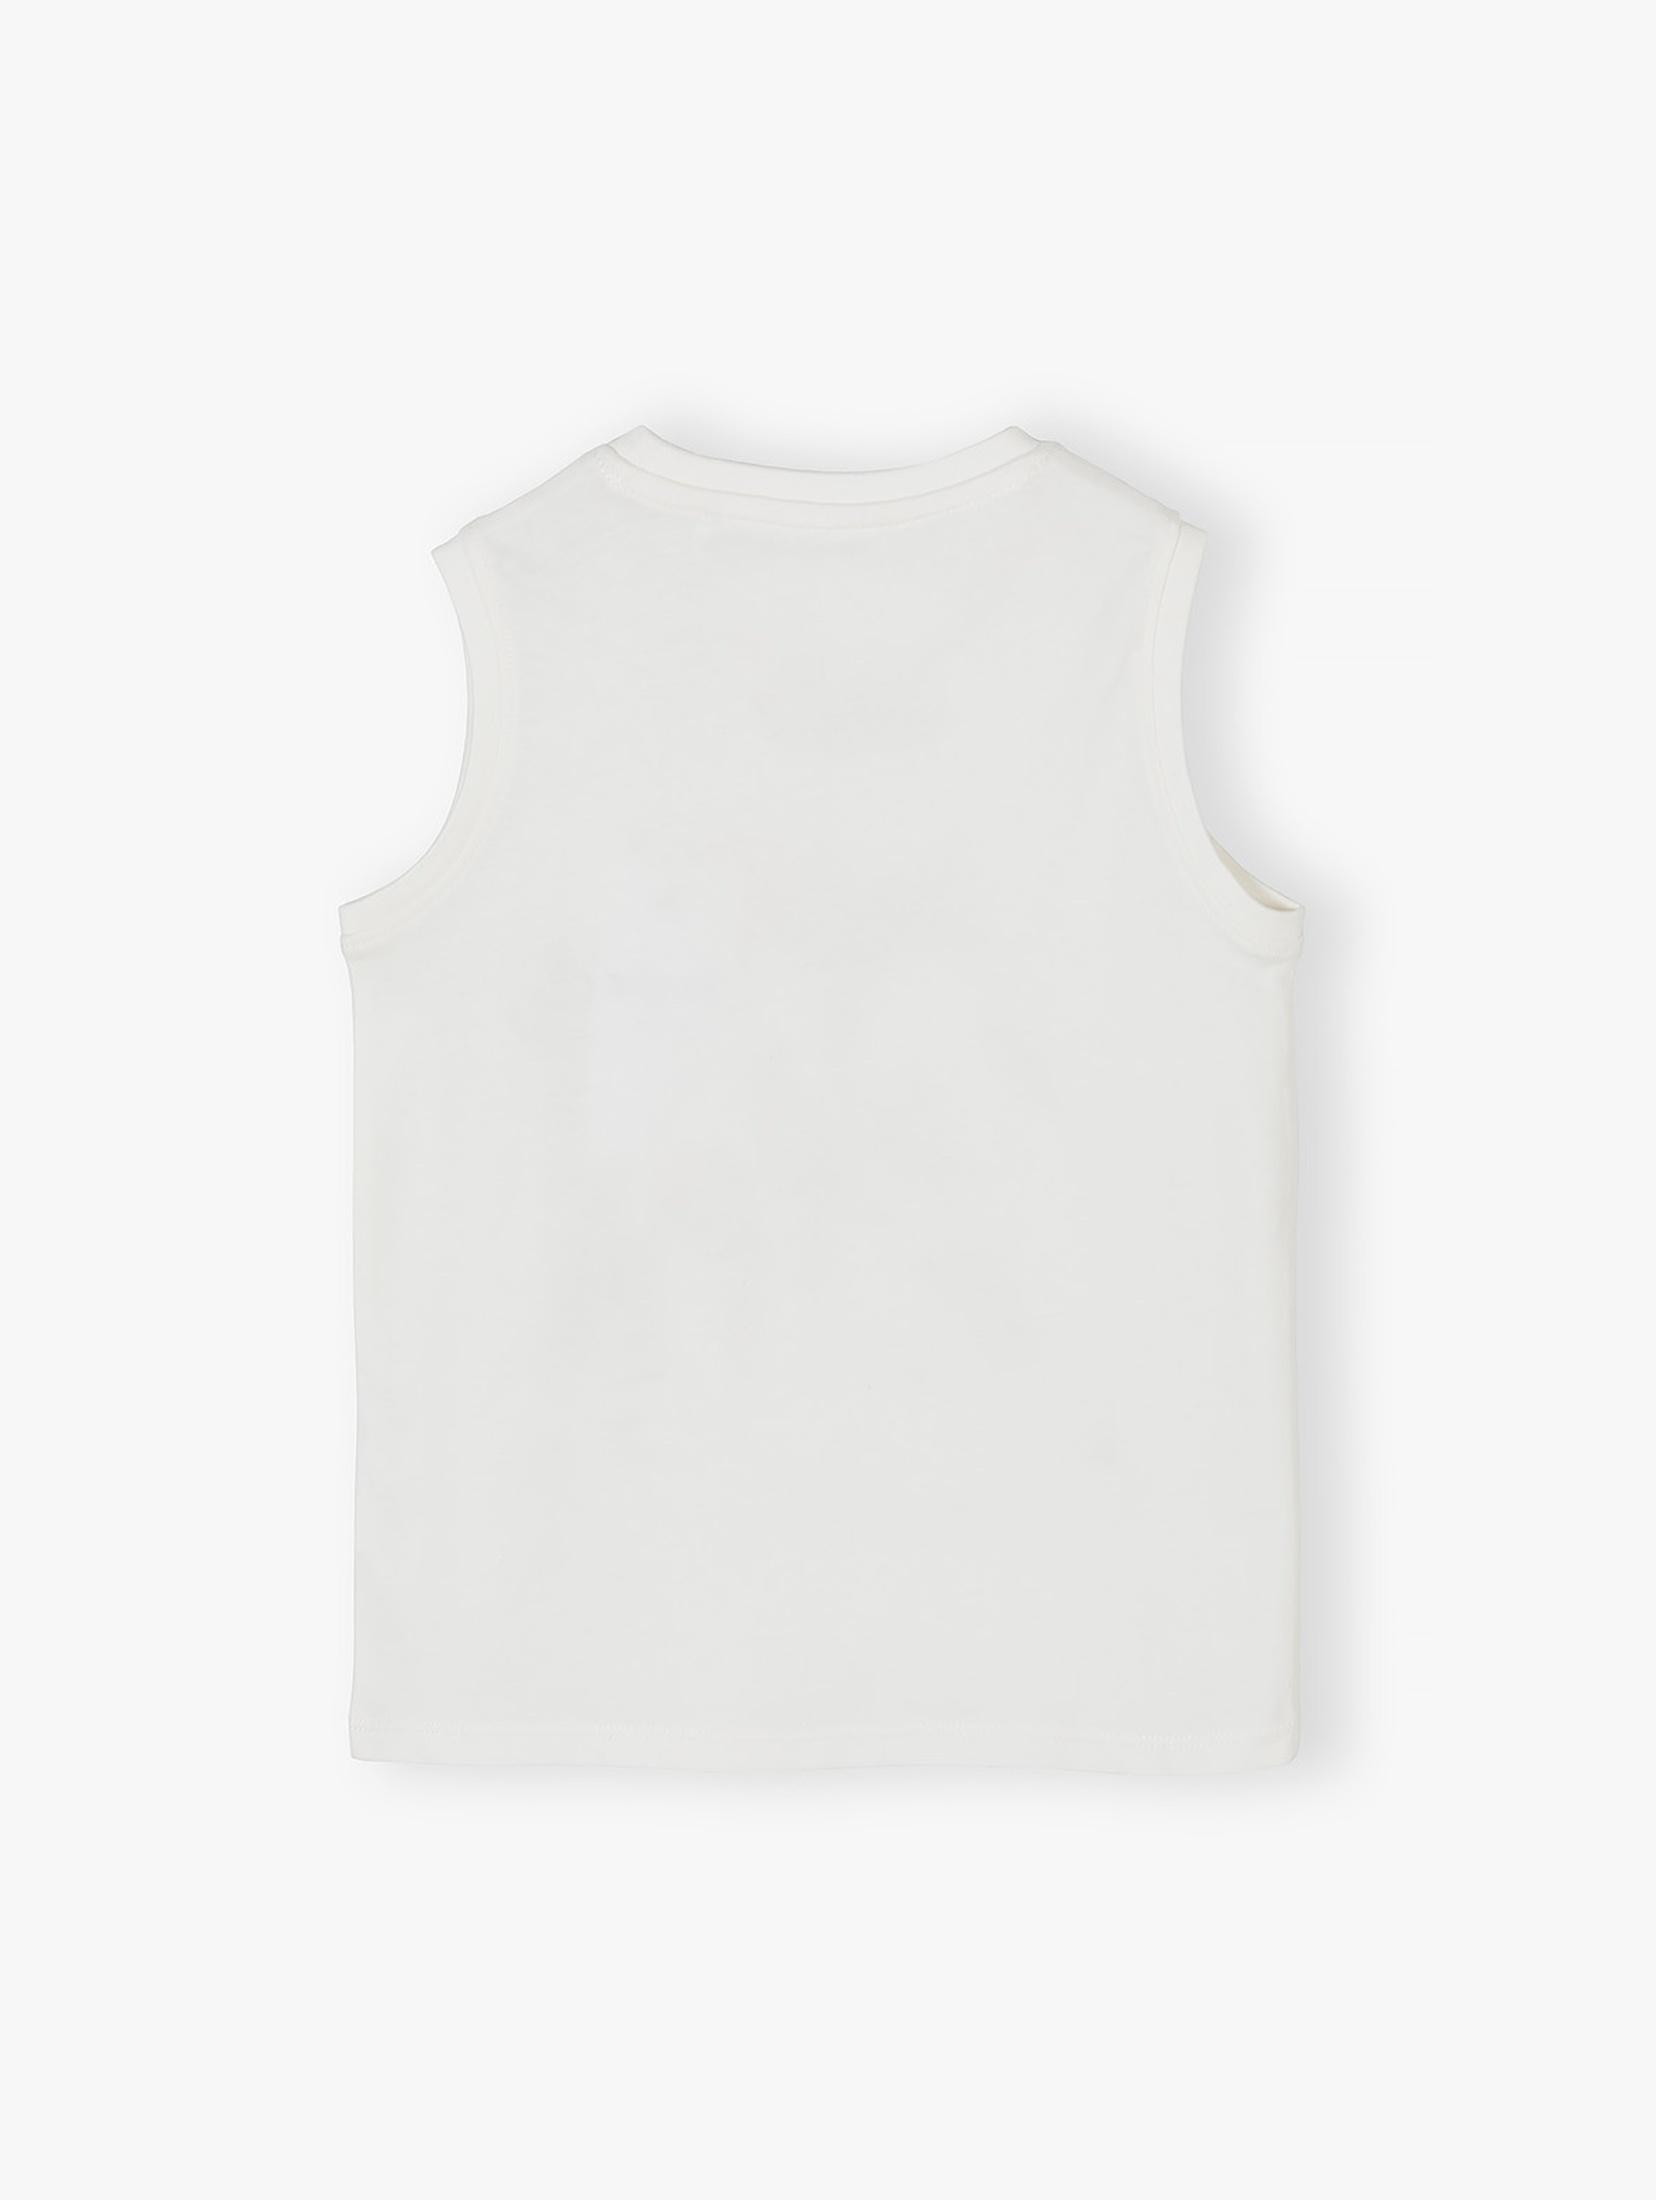 Bawełniana koszulka na ramiączka dla chłopca biała